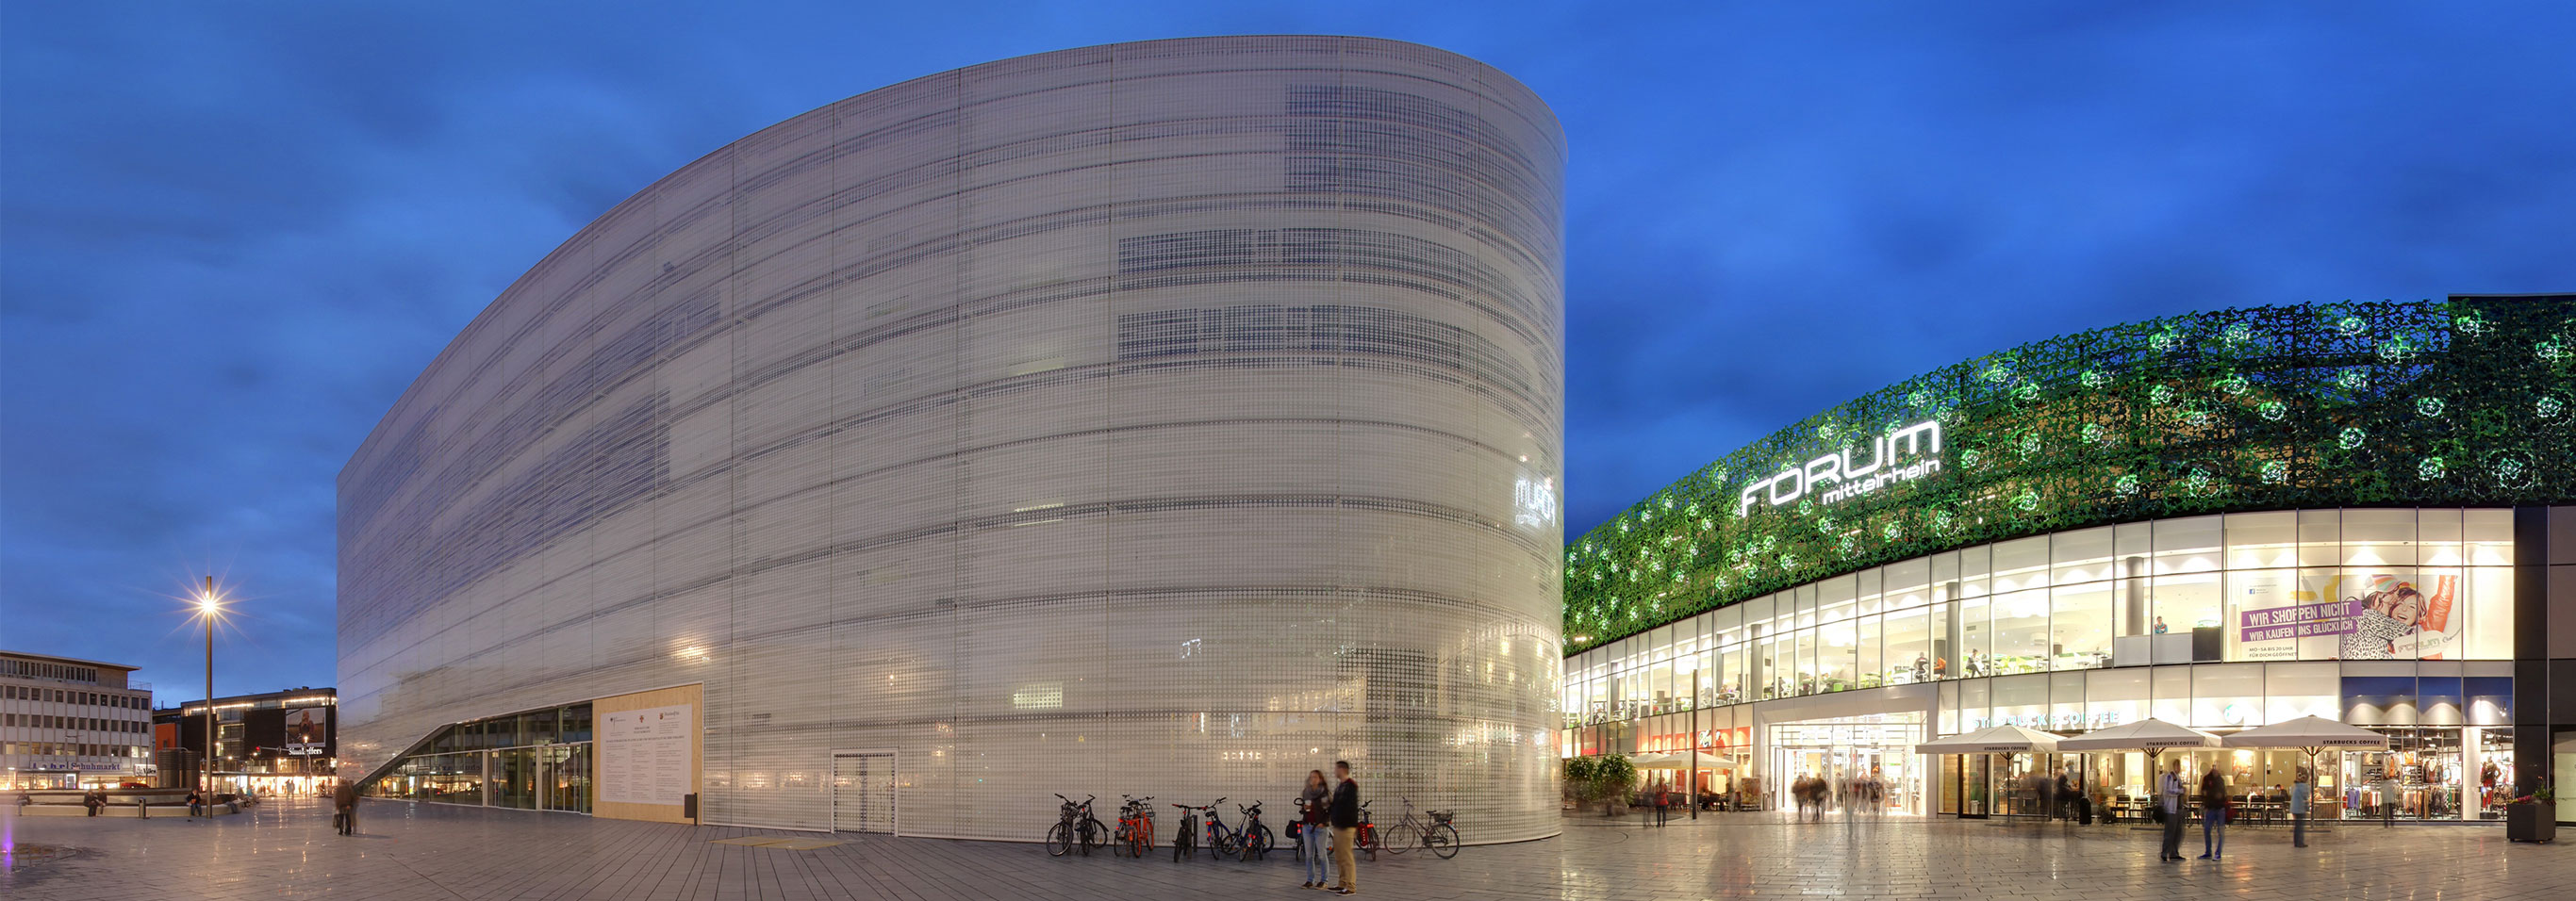 Fassadenspezialist seele fertigte 8.670qm Fassade für das Forum Mittelrhein in Koblenz, das als Einkaufs- und Kulturzentrum fungiert.